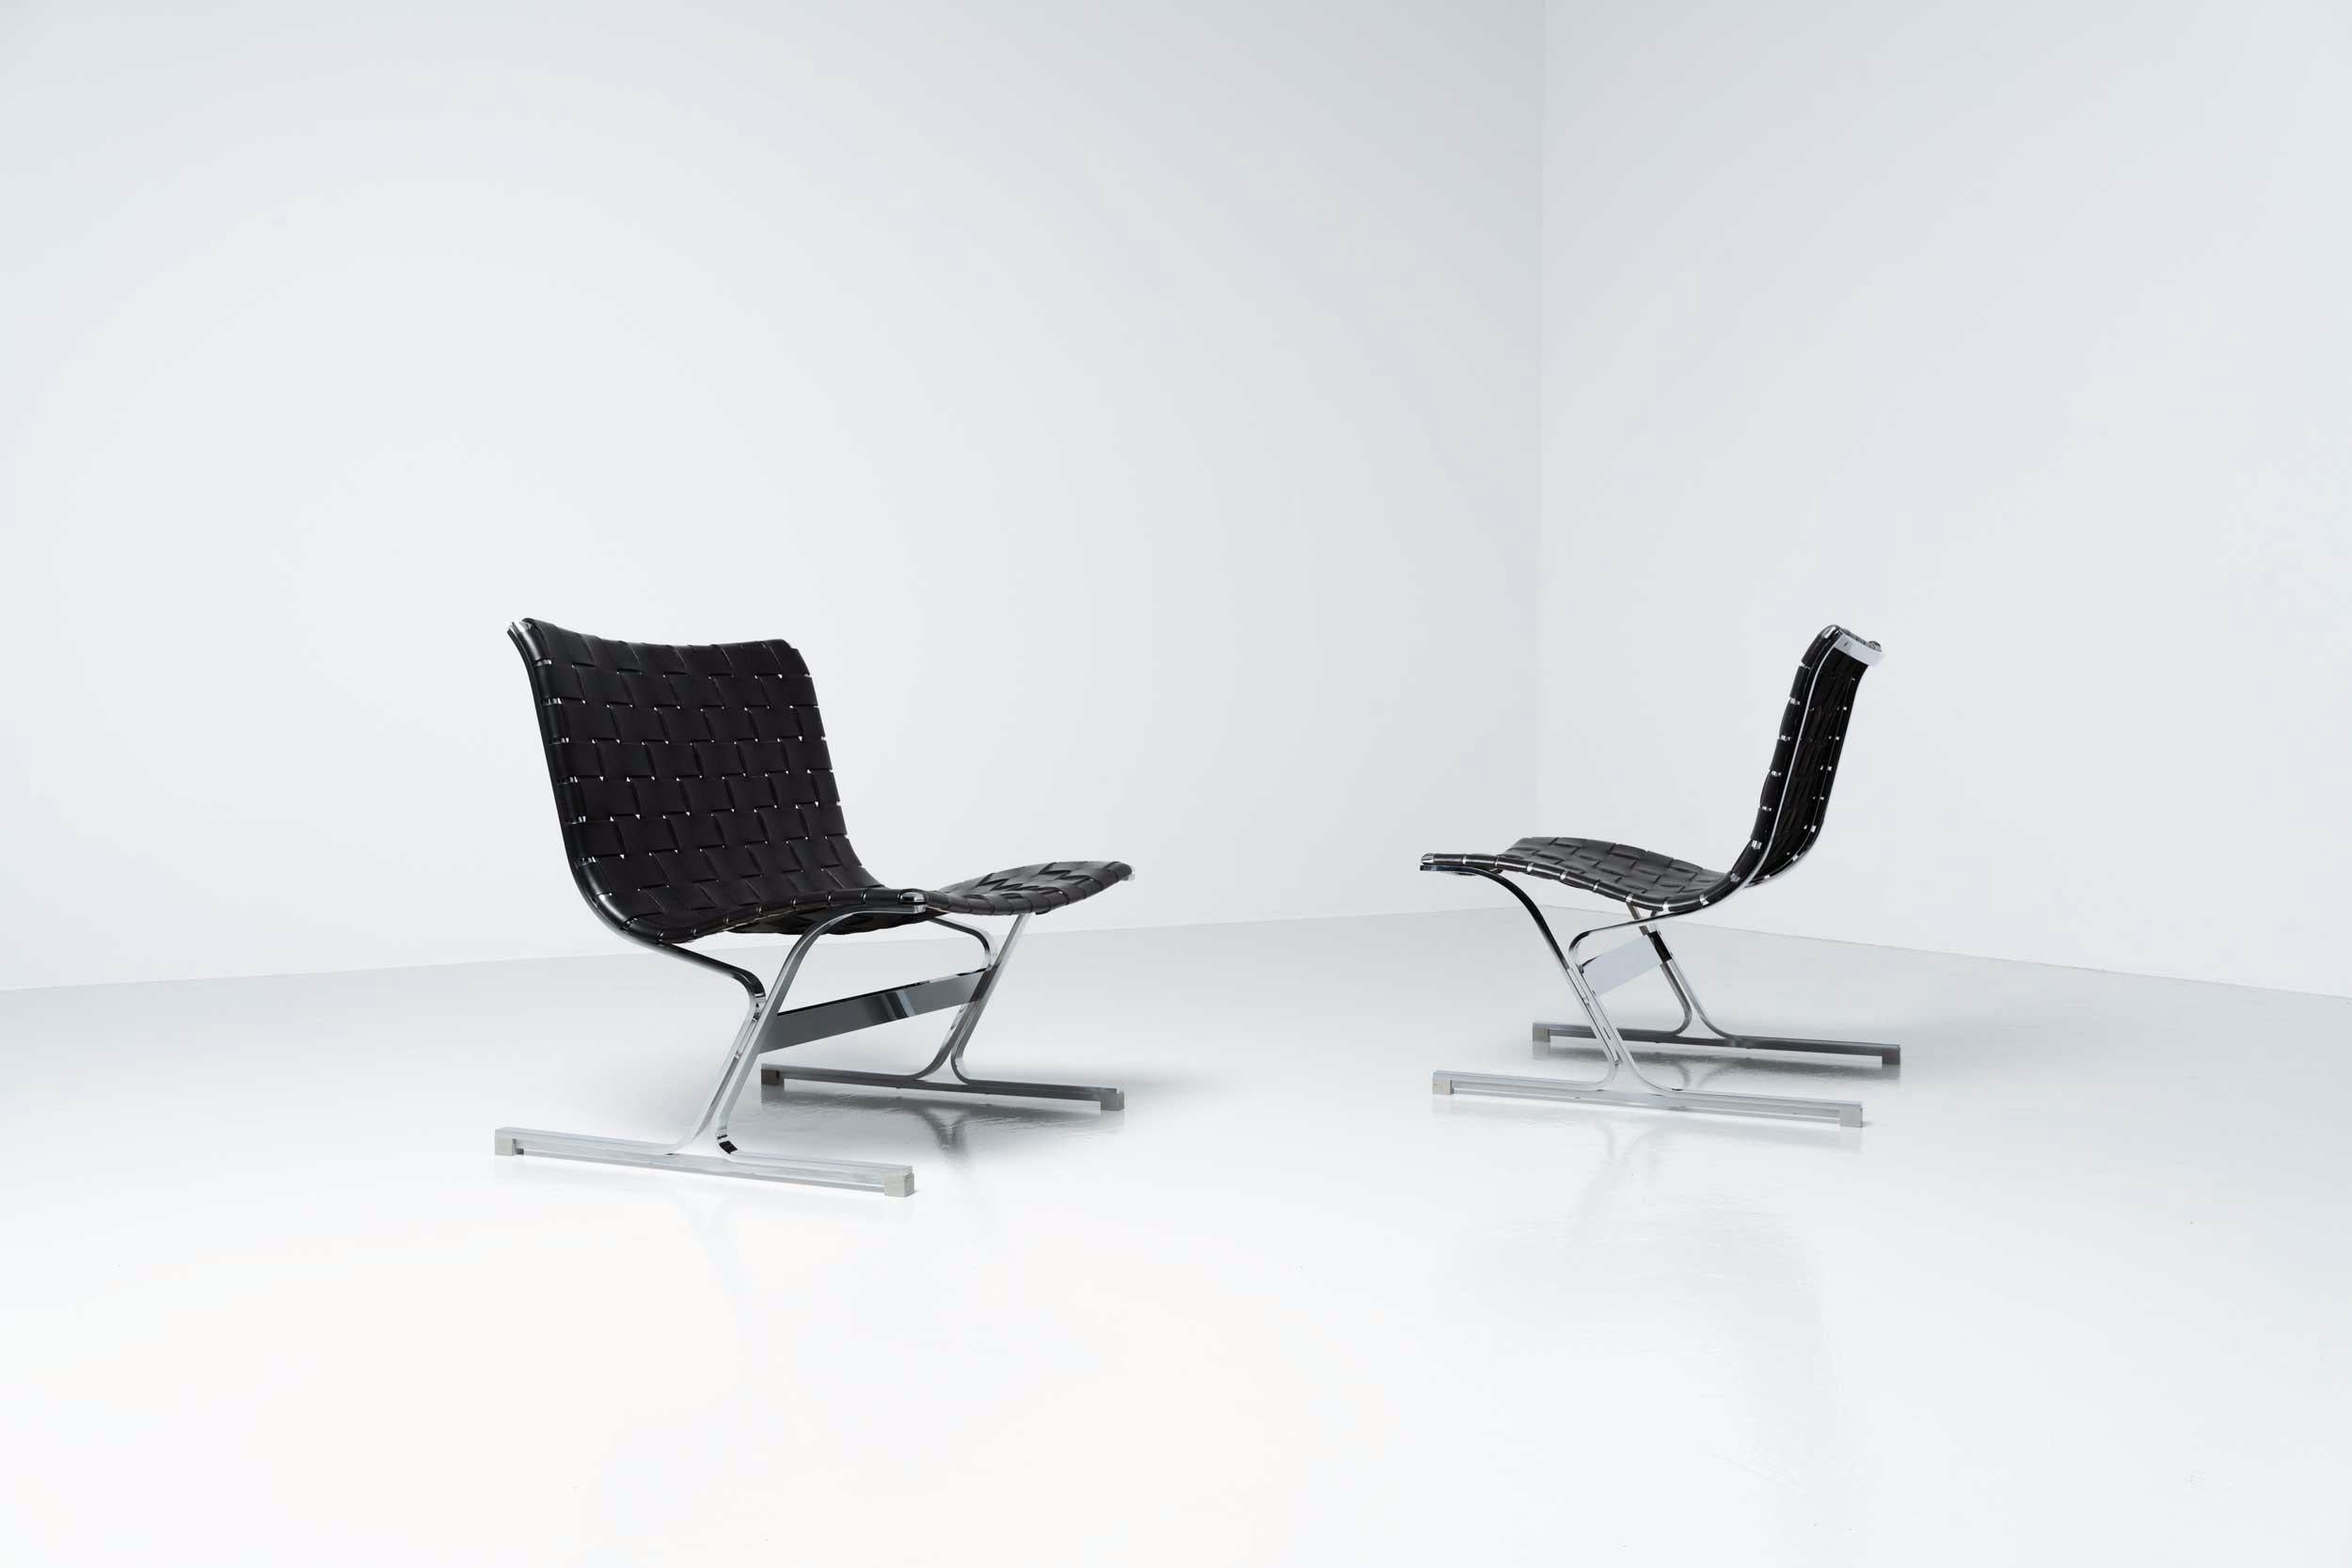 Superbe paire de chaises longues Luar conçues par Ross Littel et fabriquées par ICF de Padova, Italie 1965. Ces incroyables chaises longues sont faites de cadres en métal massif chromé avec d'étonnantes sangles en cuir noir qui sont toujours